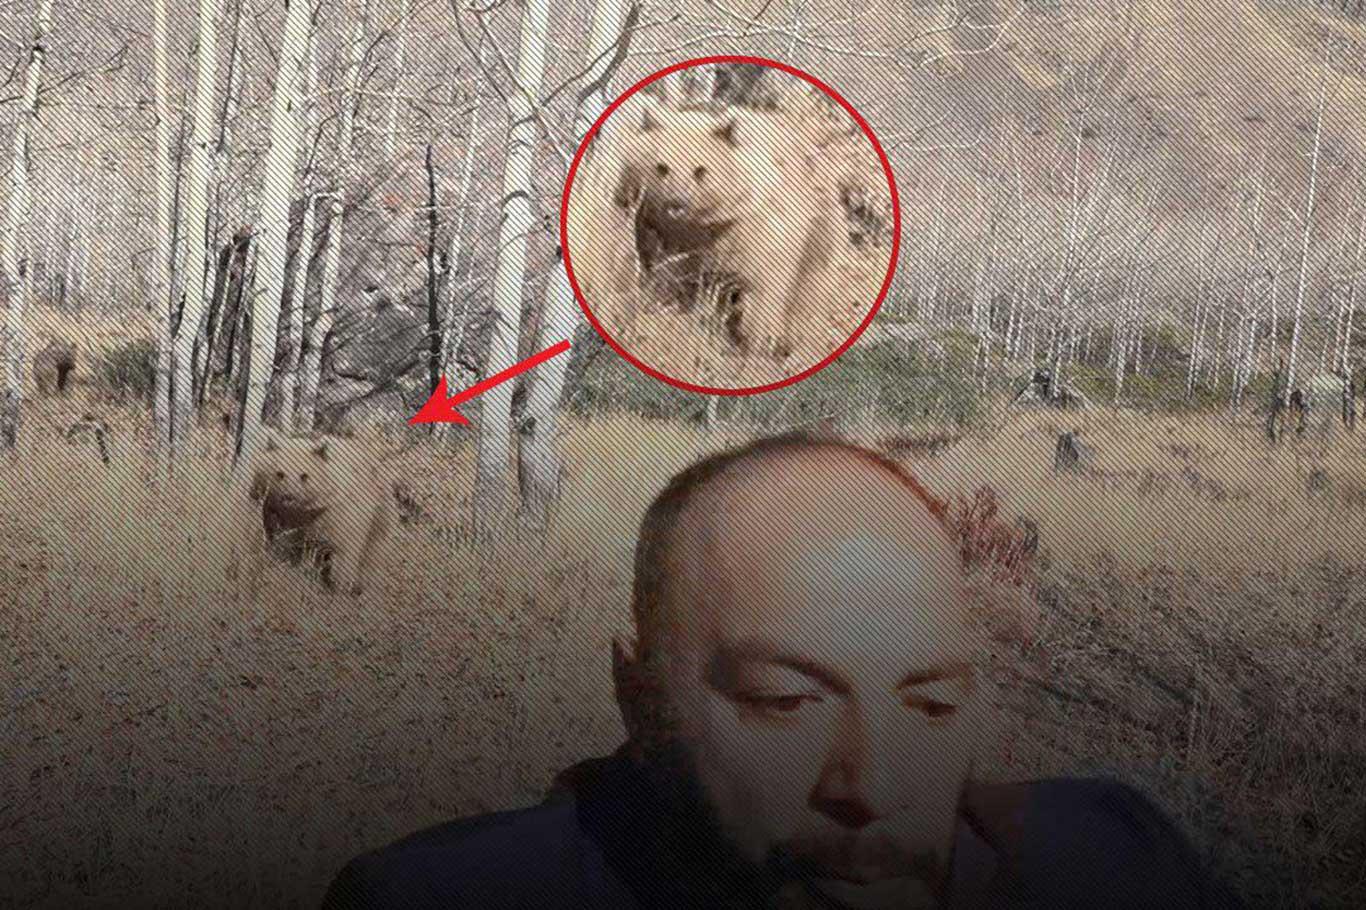 Muhabire ayı saldırısı kamerada